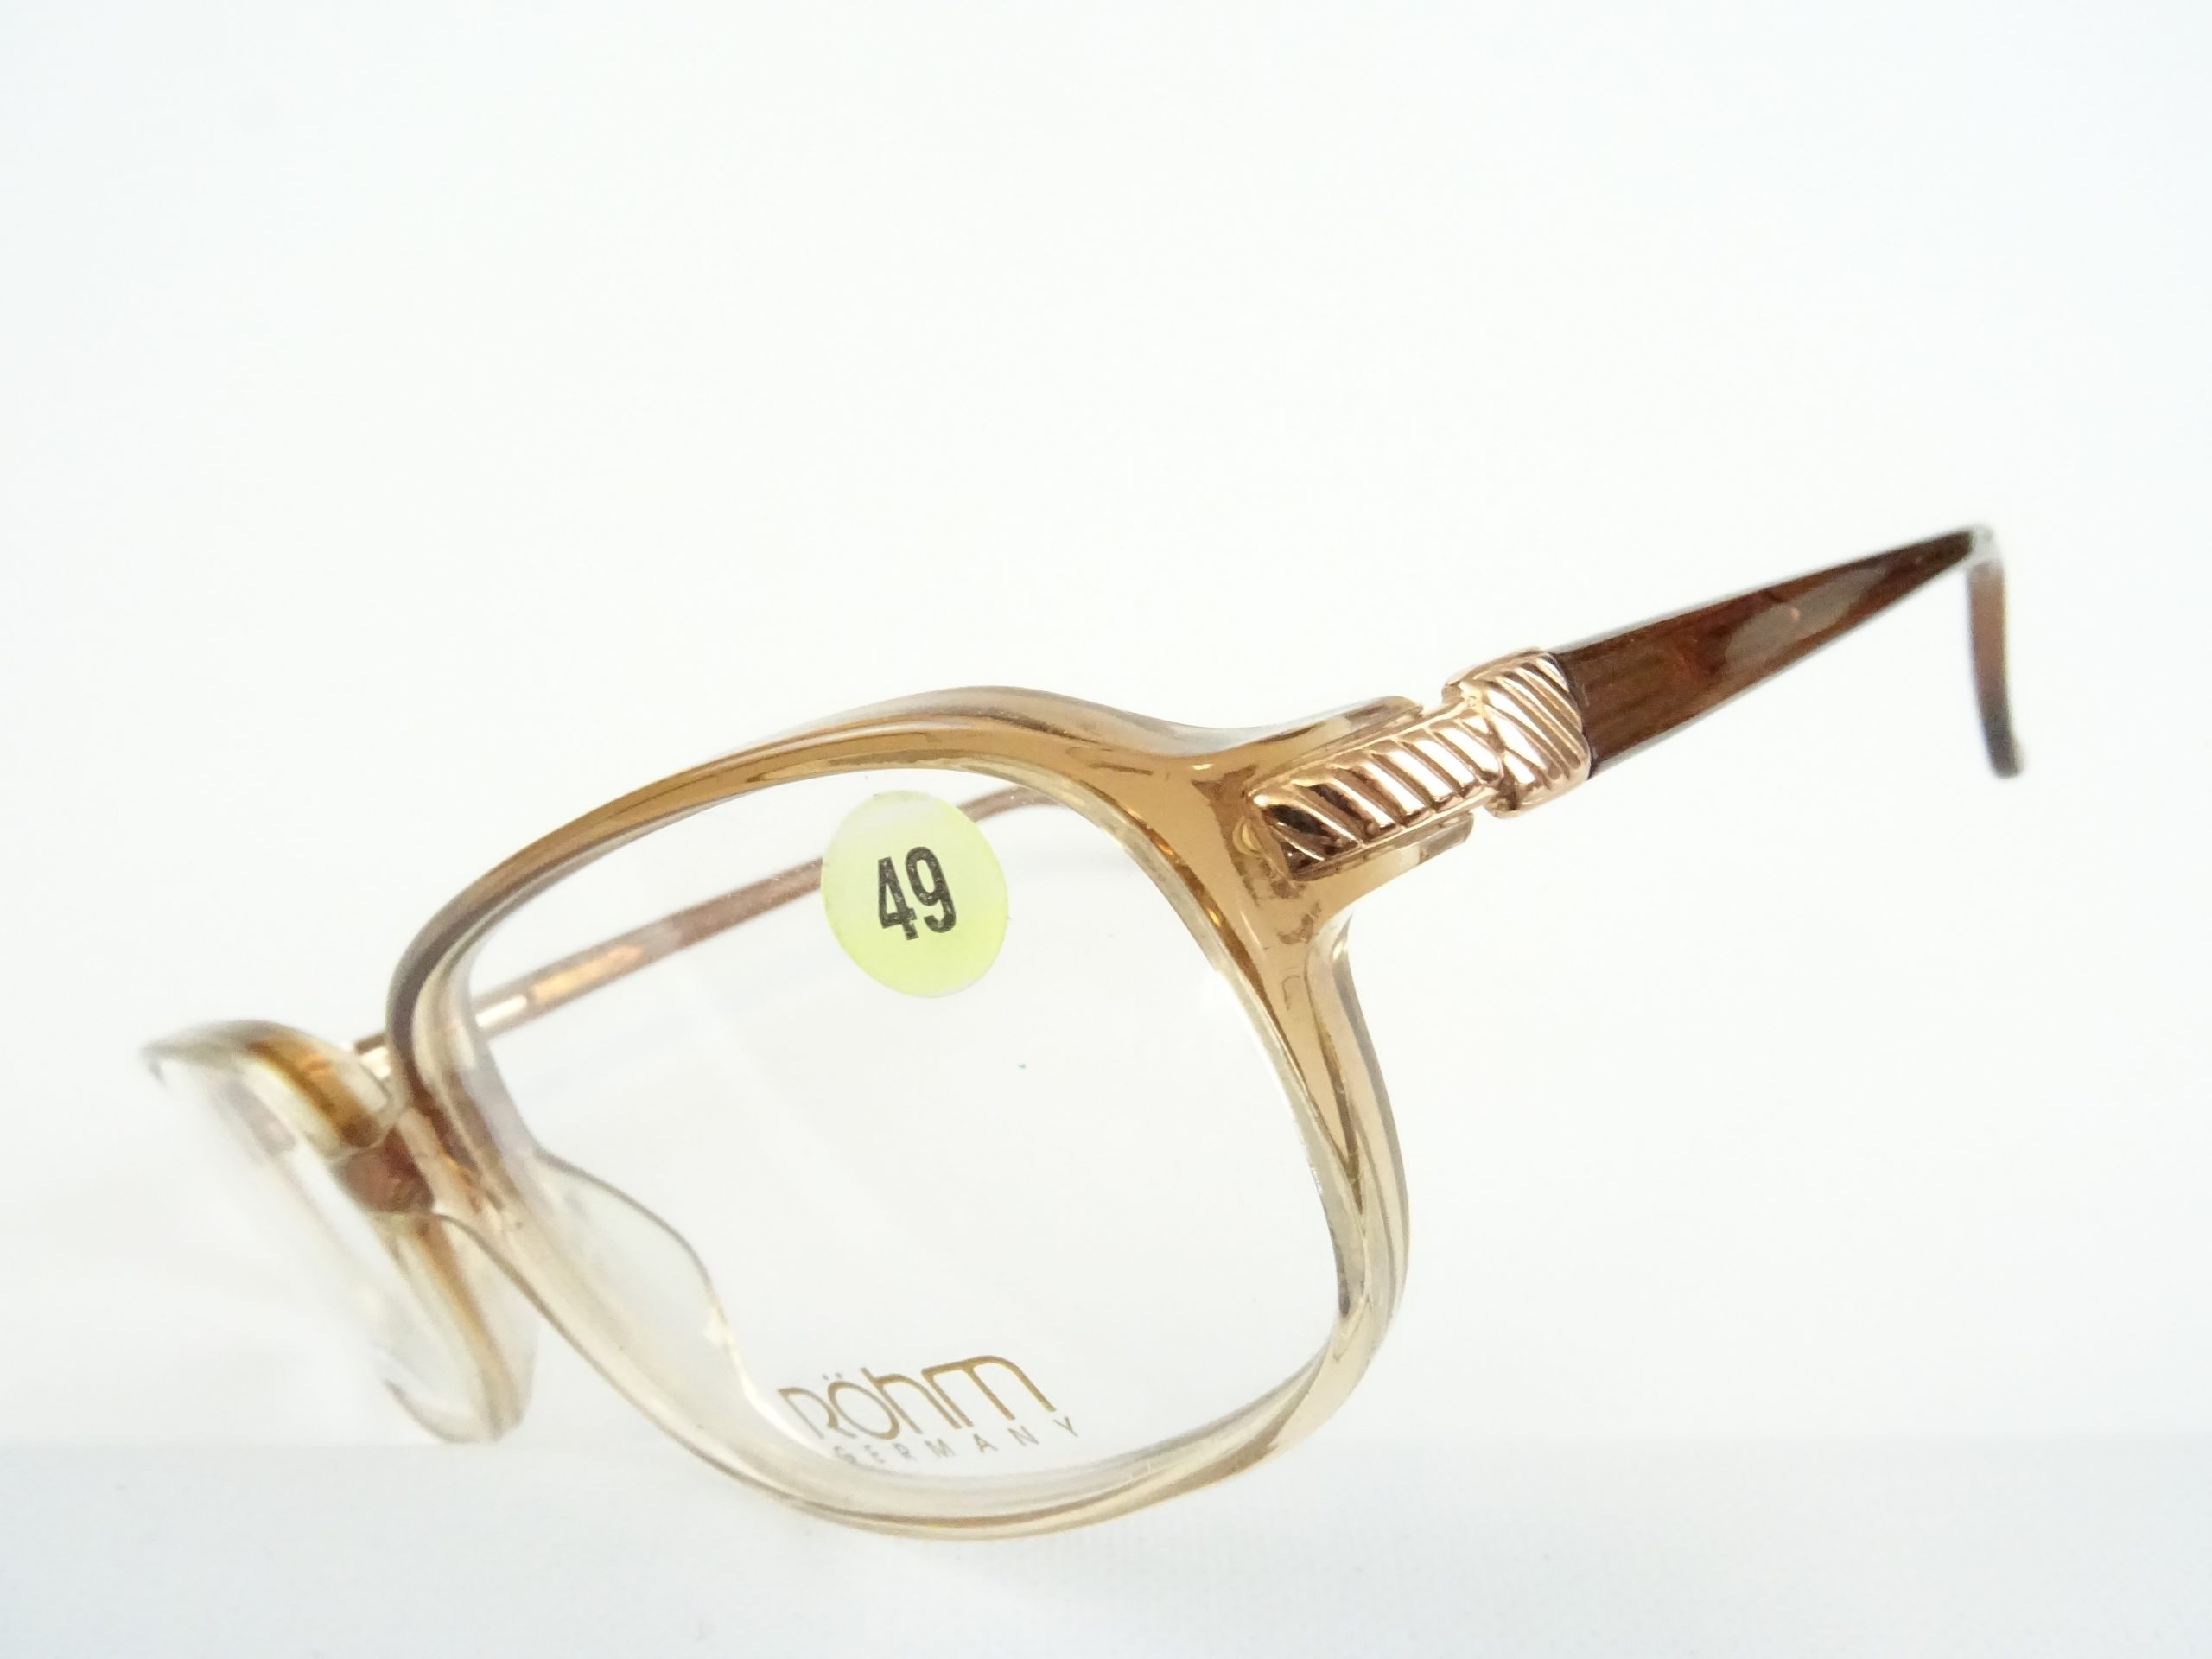 Vintagebrille Herrenfassung Eckig Mit Stabilen Federbugeln Robuste Brillen Made In Germany Gr M Vintage Brillen Welt